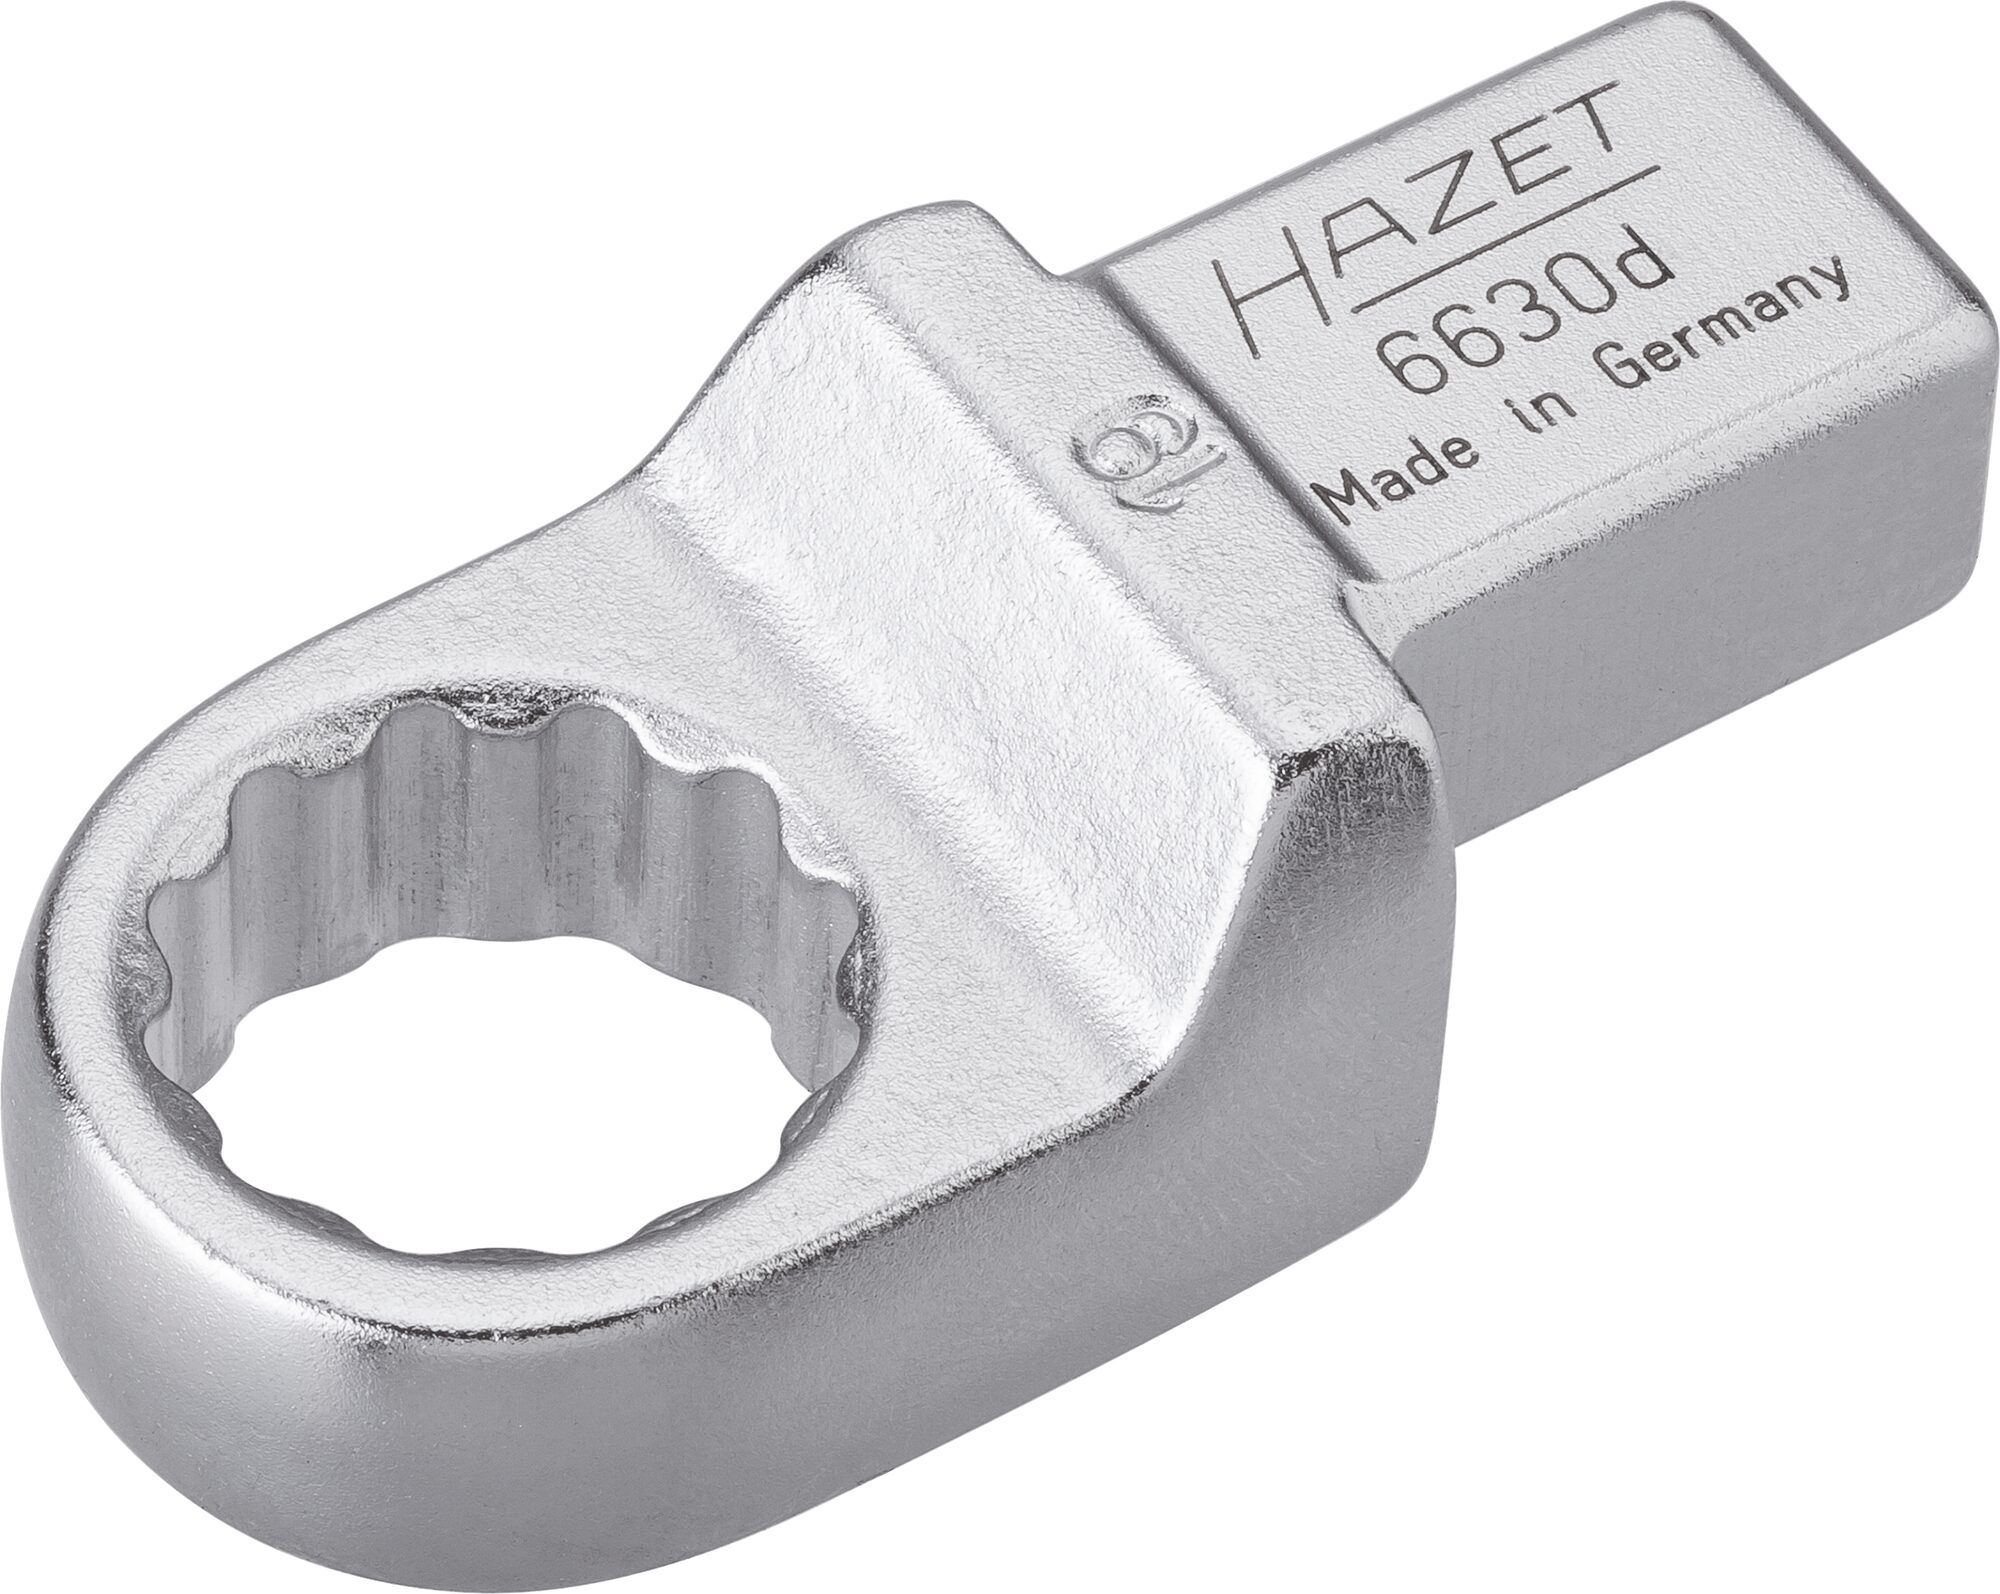 HAZET Einsteck-Ringschlüssel 6630D-19 · Einsteck-Vierkant 14 x 18 mm · Außen Doppel-Sechskant-Tractionsprofil · 19 mm